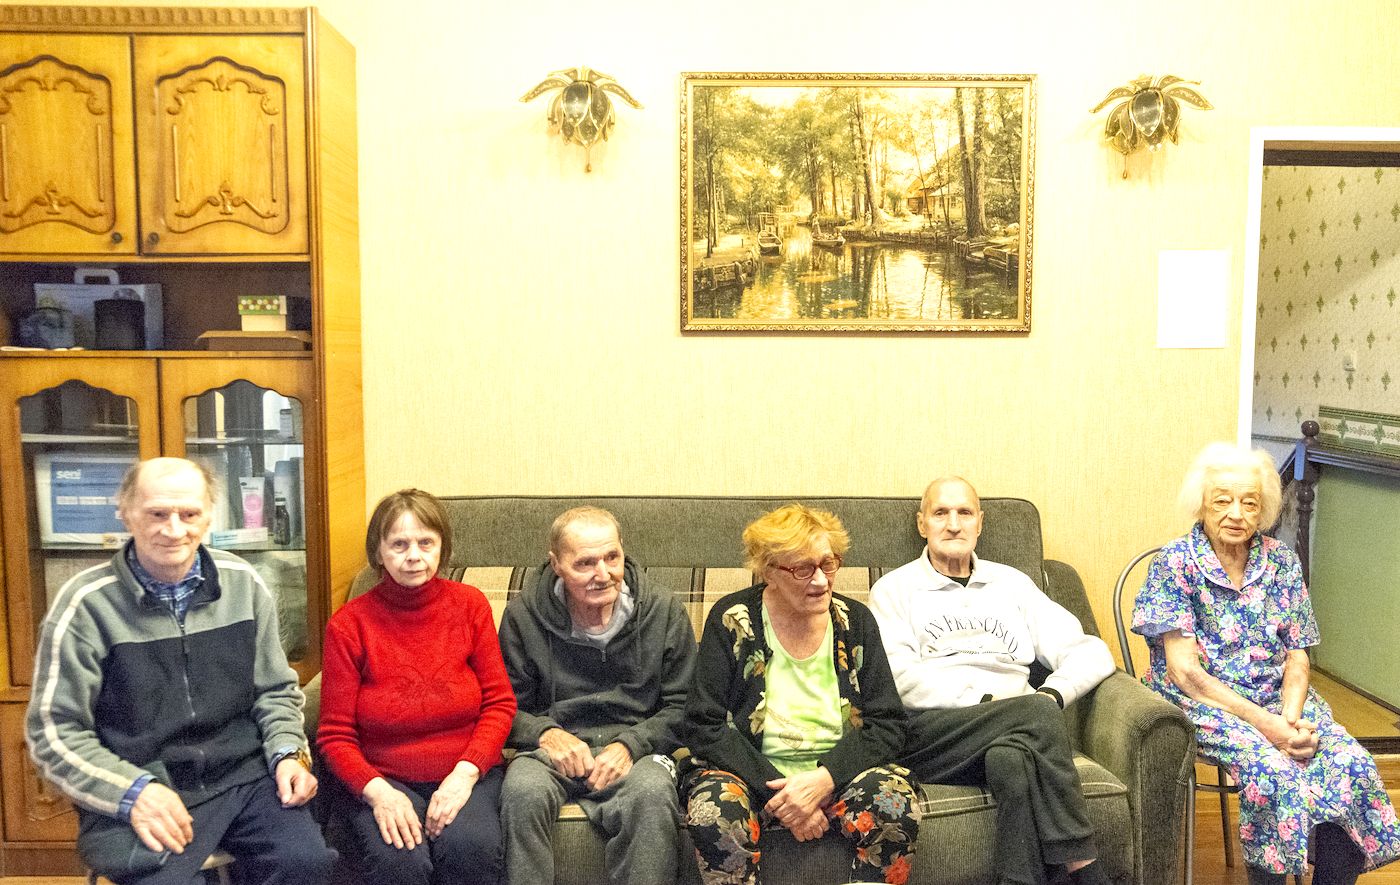 Реабилитационный центр для пожилых Десна